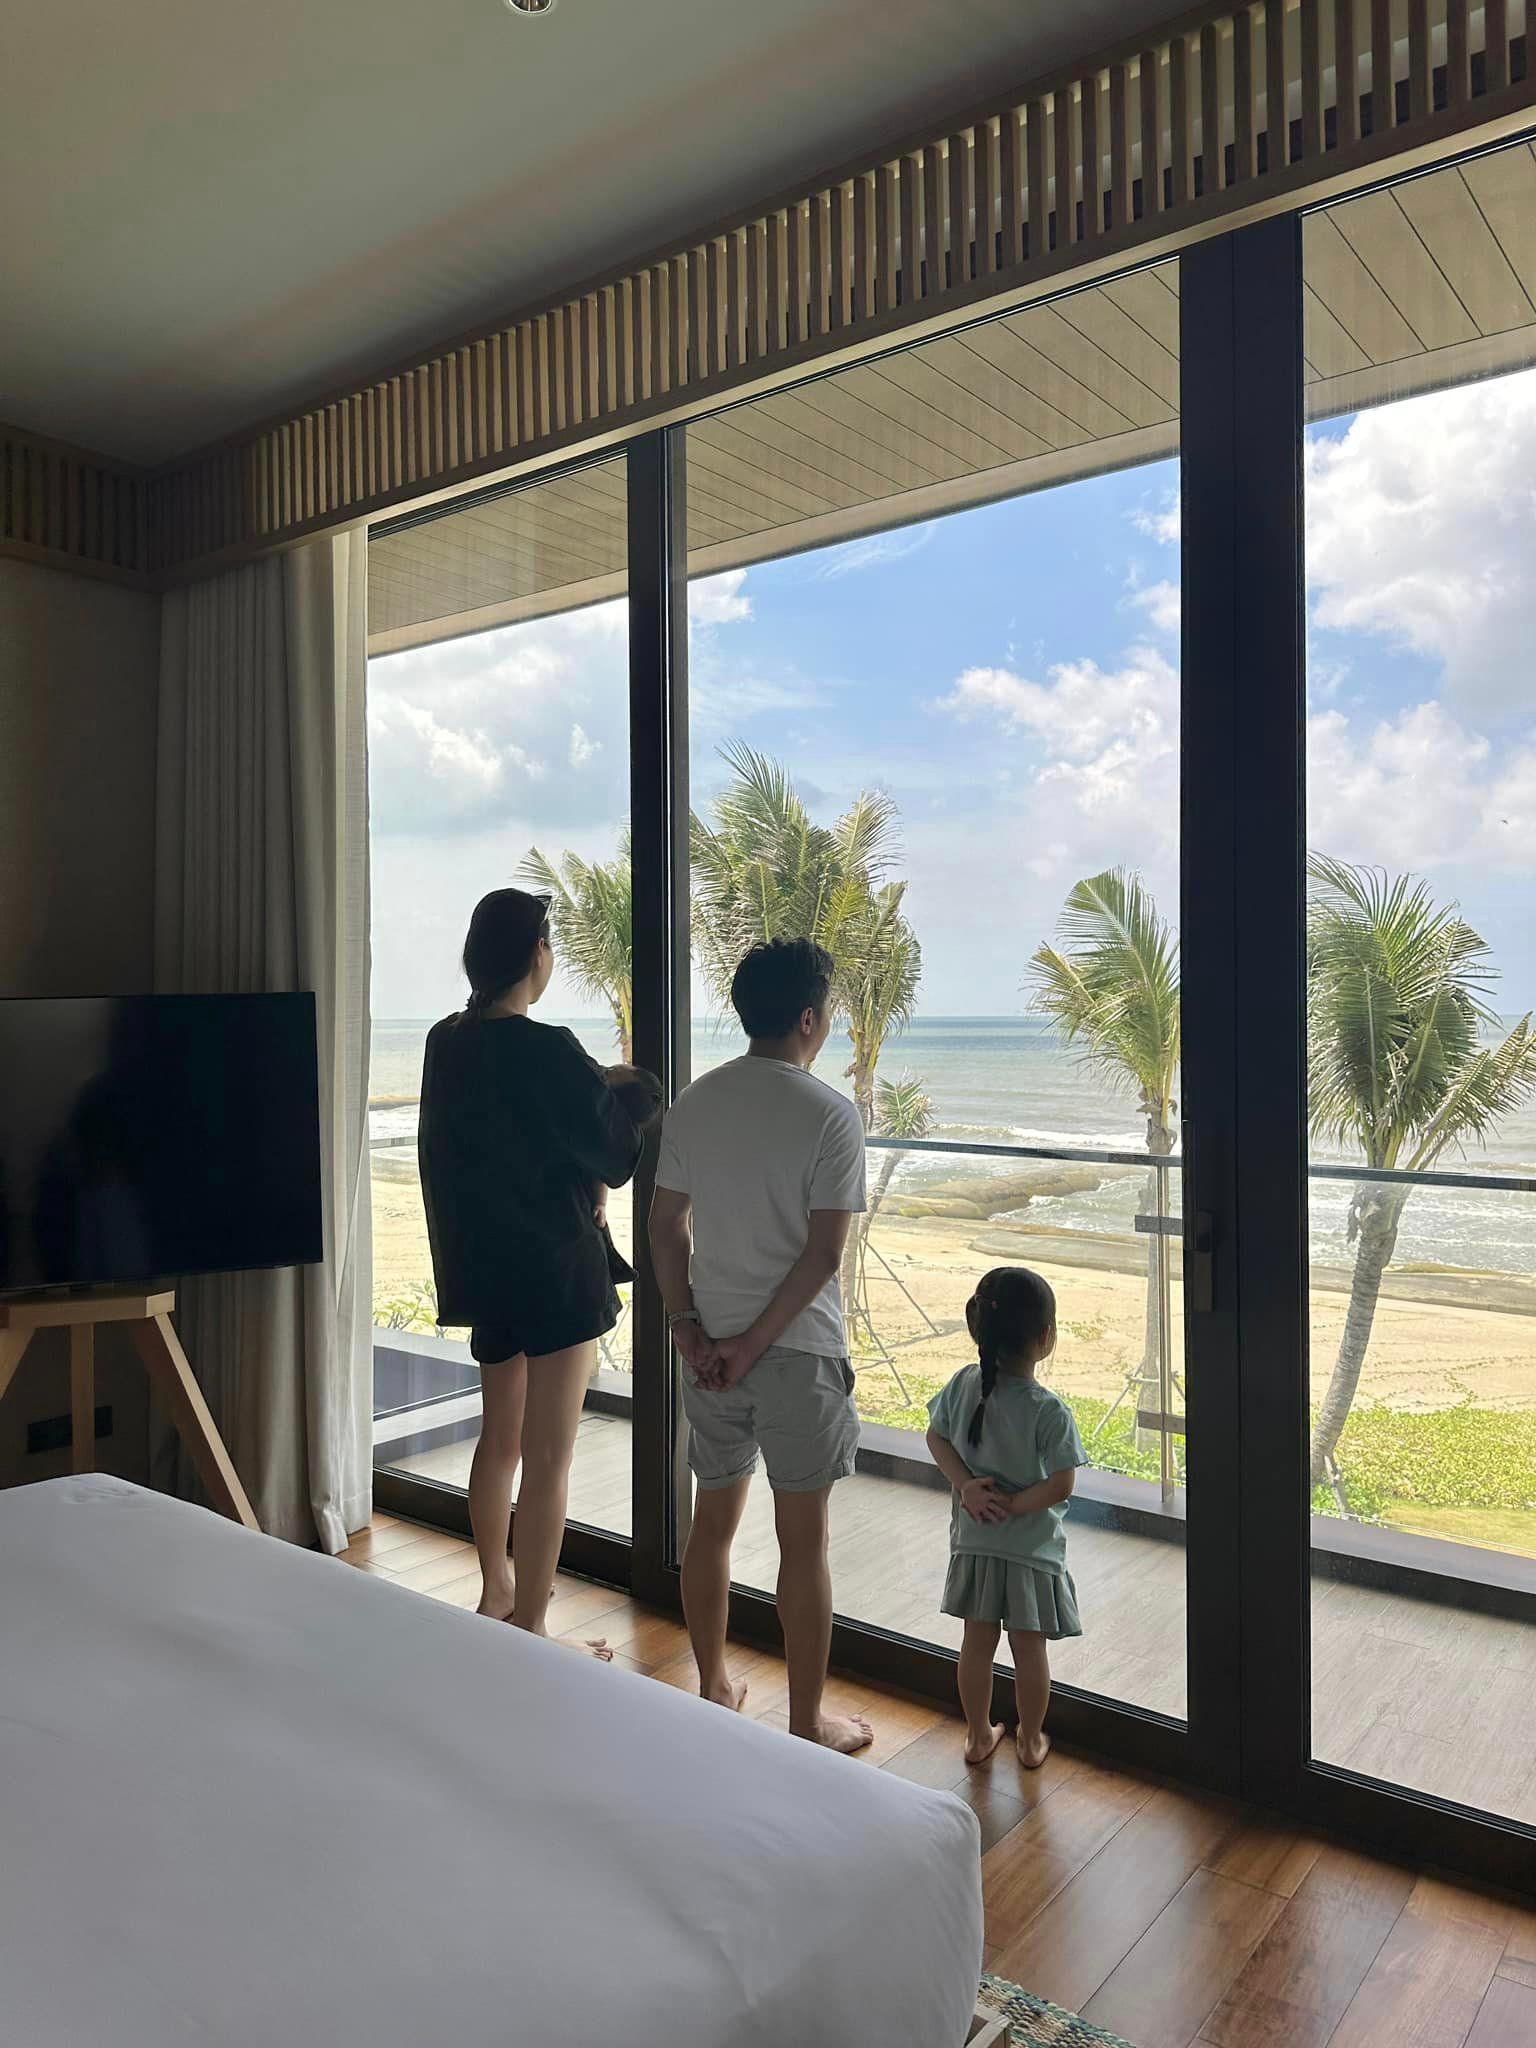 Qua hình ảnh được Cường Đô La chia sẻ, đây là một căn biệt thự có view hướng biển tuyệt đẹp - https://batdongsanbiz.vn/